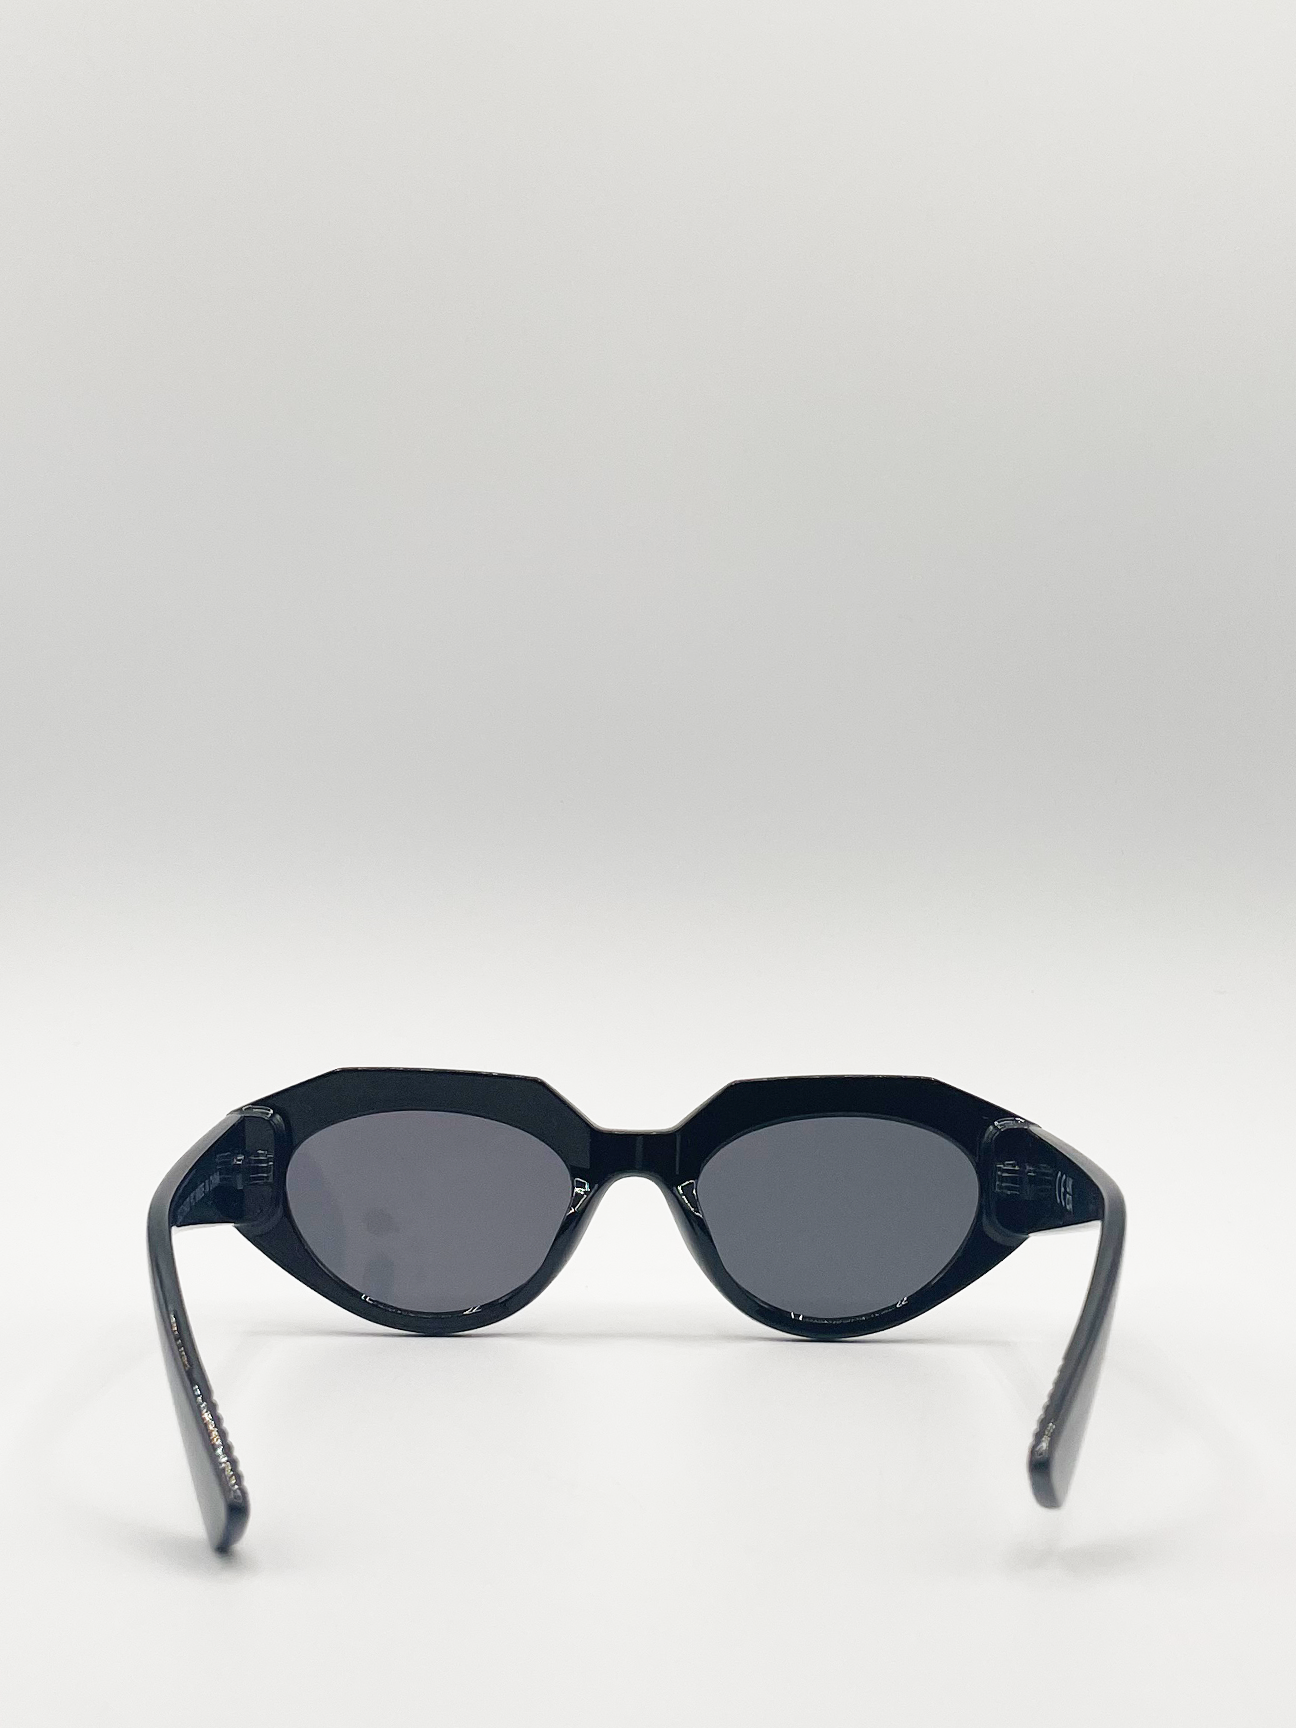 Black Angular Cat Eye Sunglasses with Black Lenses